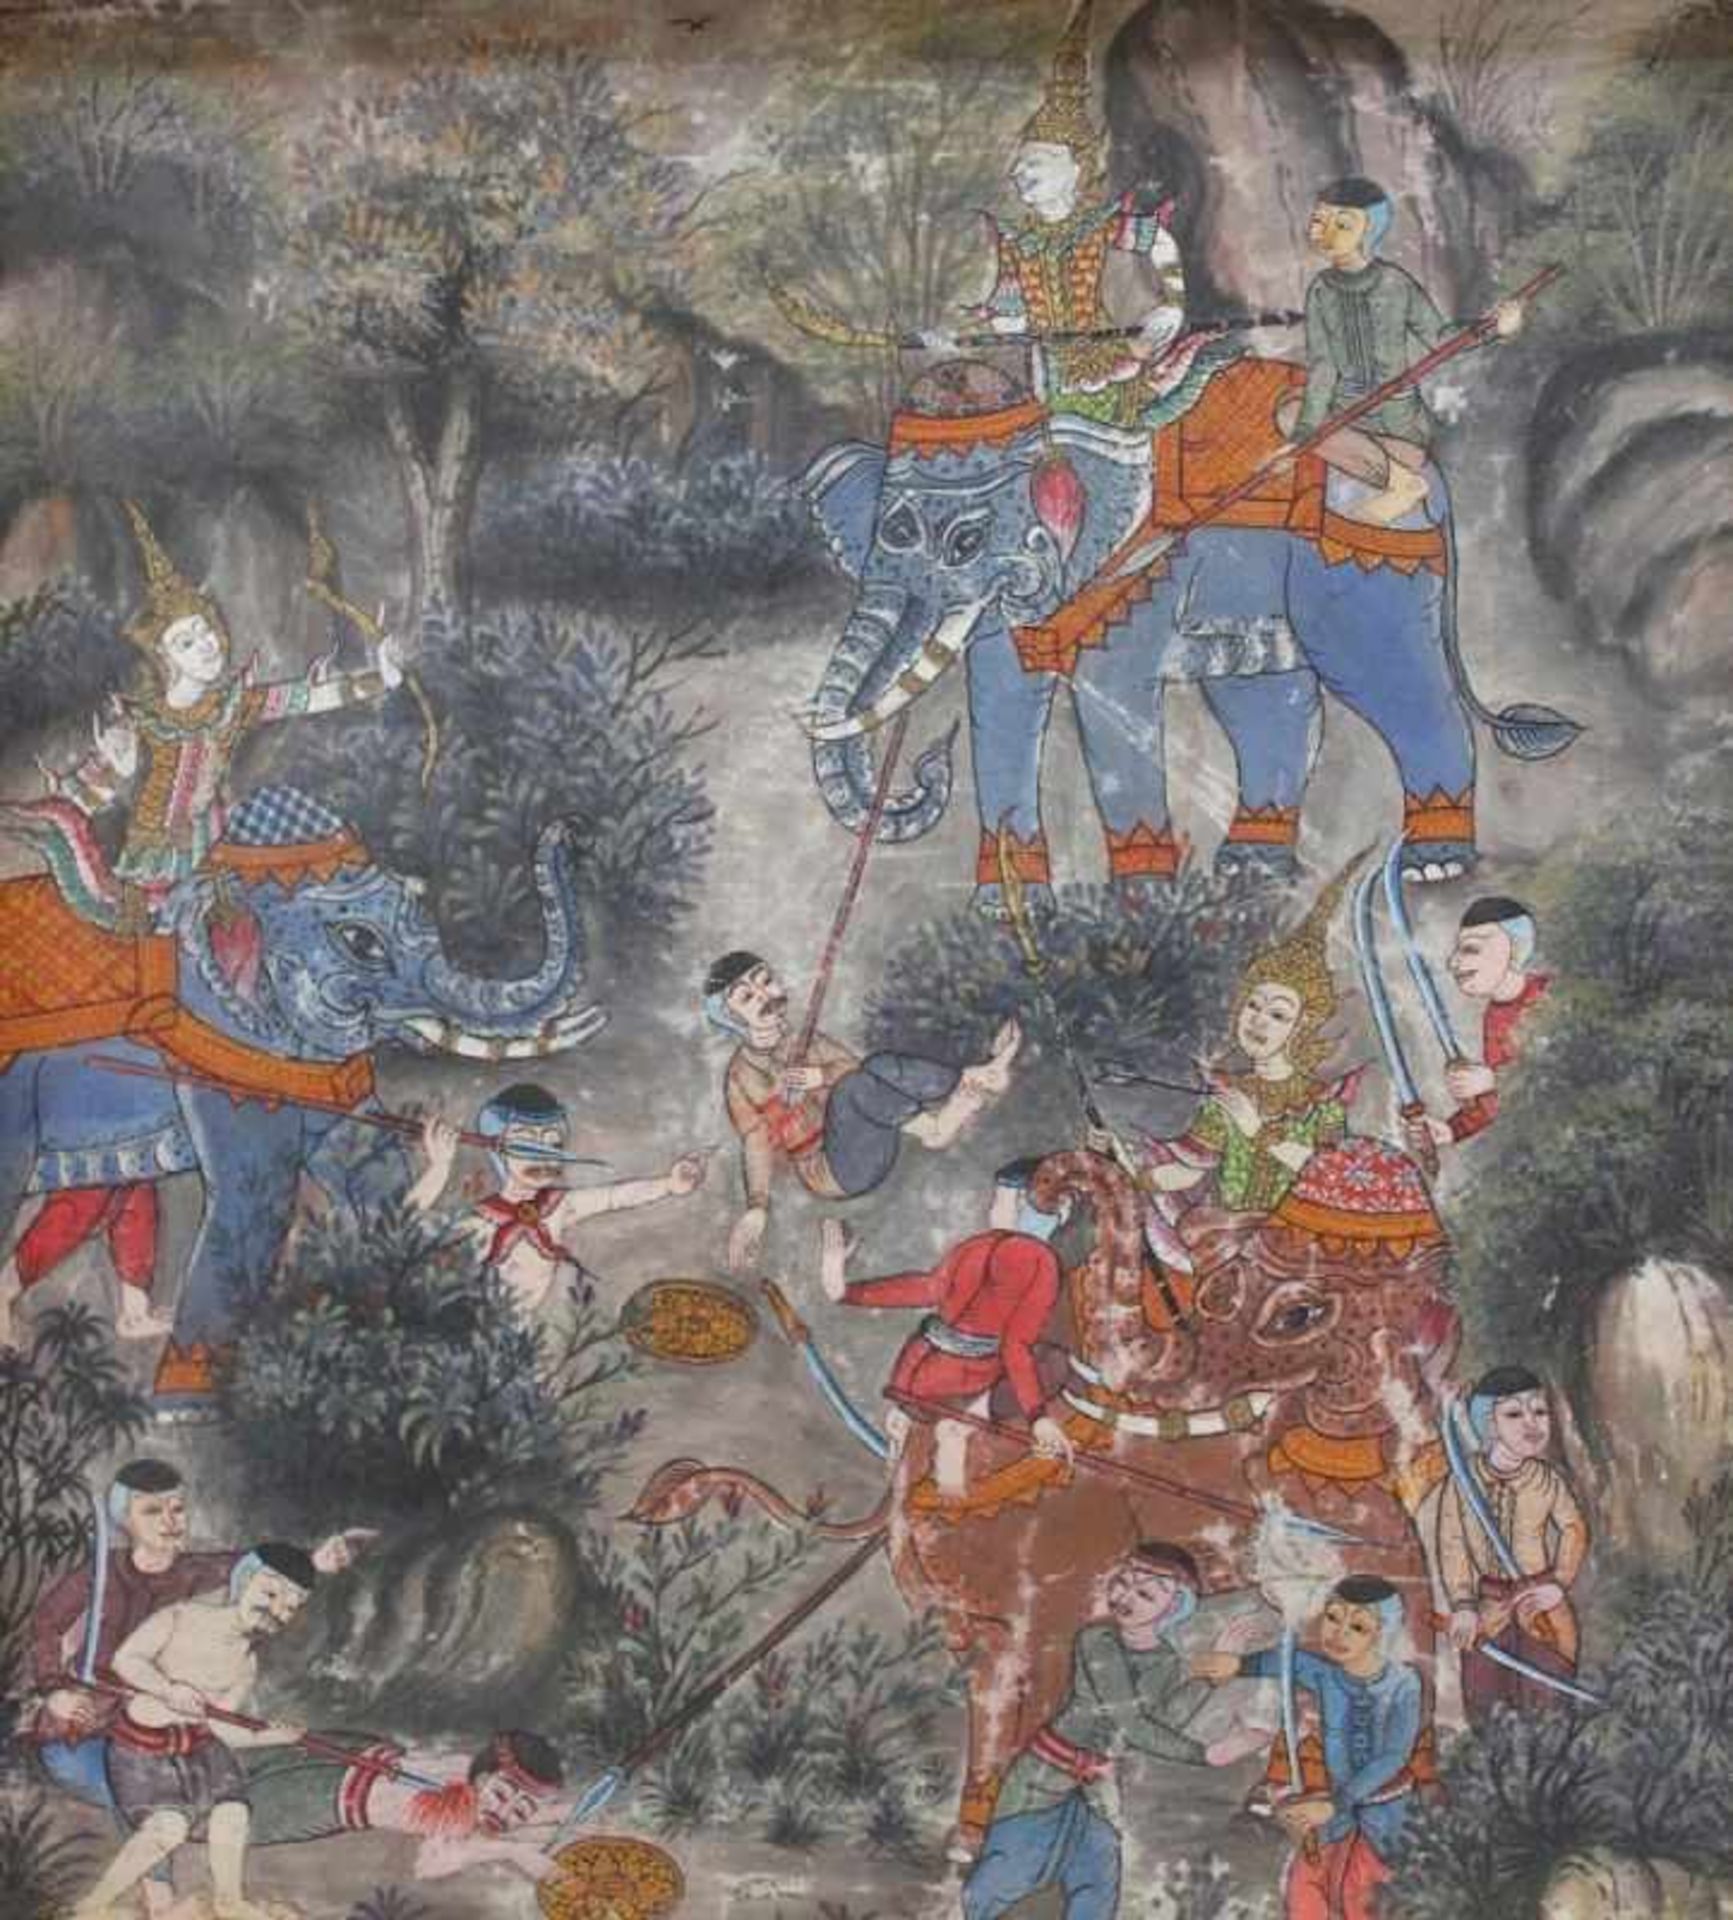 Gemälde - wohl Thailand "Schlachtenszene mit Kriegern und Elefanten", anonym, Mischtechnik,